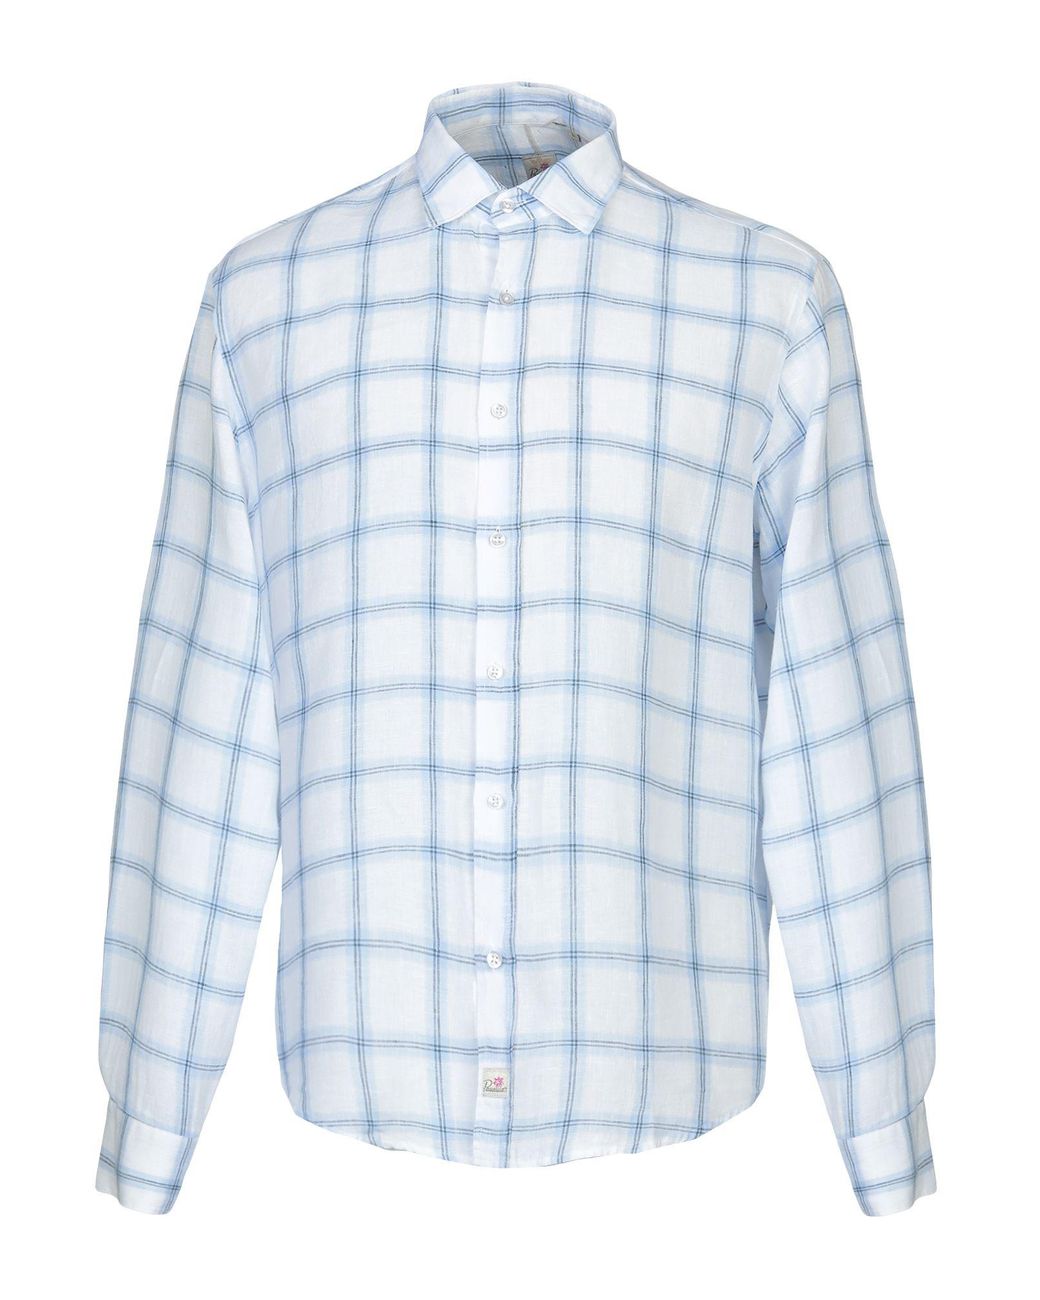 Homme Vêtements Chemises Chemises casual et boutonnées Chemise Coton Officina 36 pour homme en coloris Bleu 